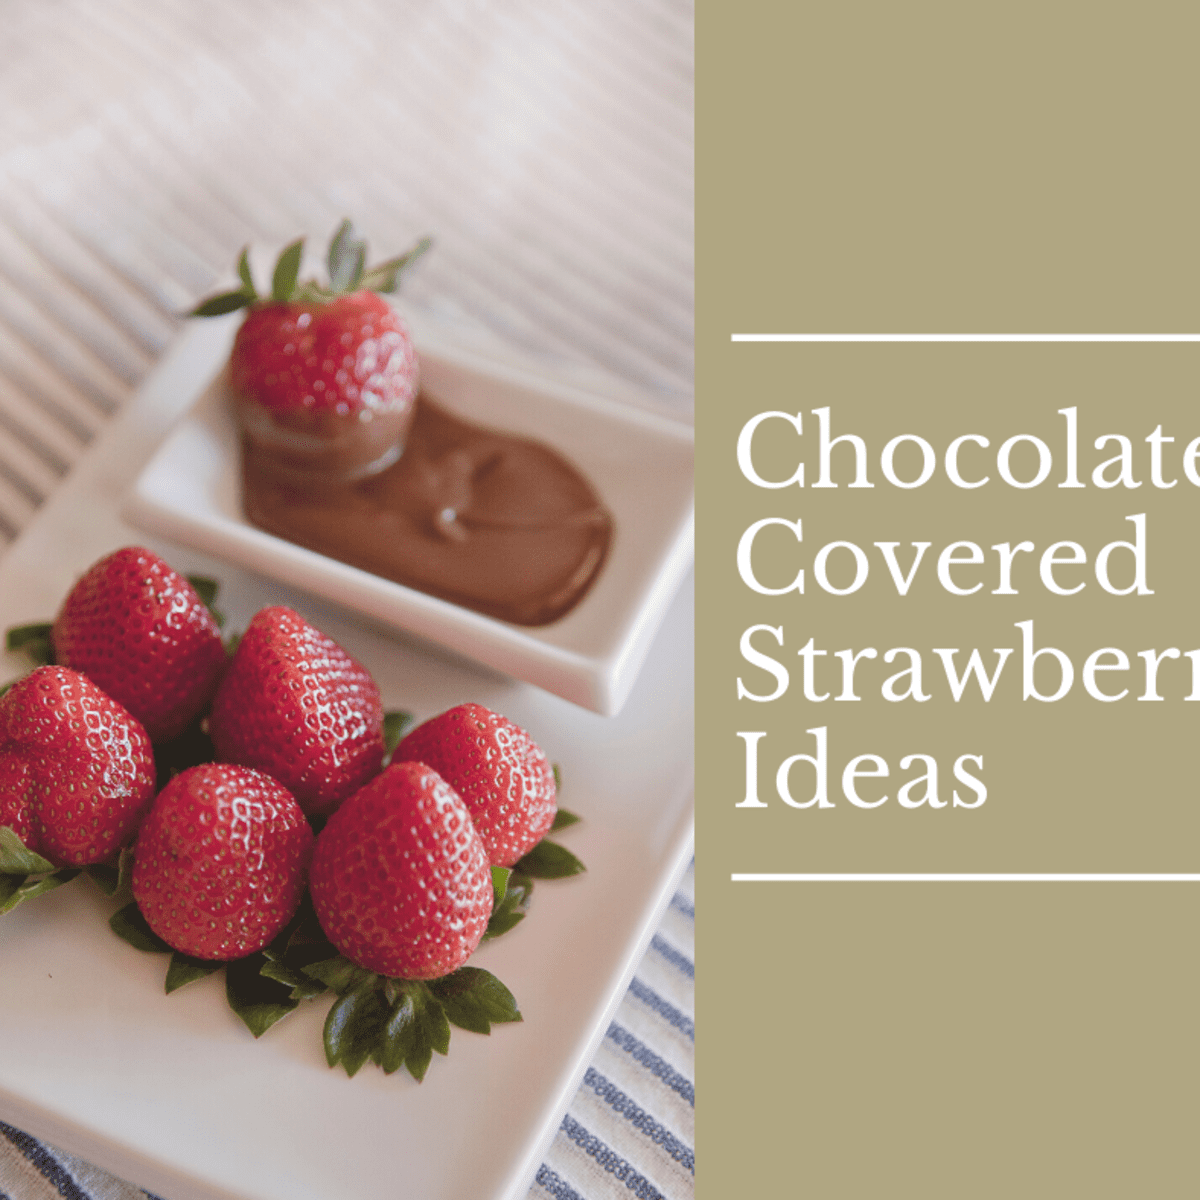  Chocolate Covered Strawberries Kit